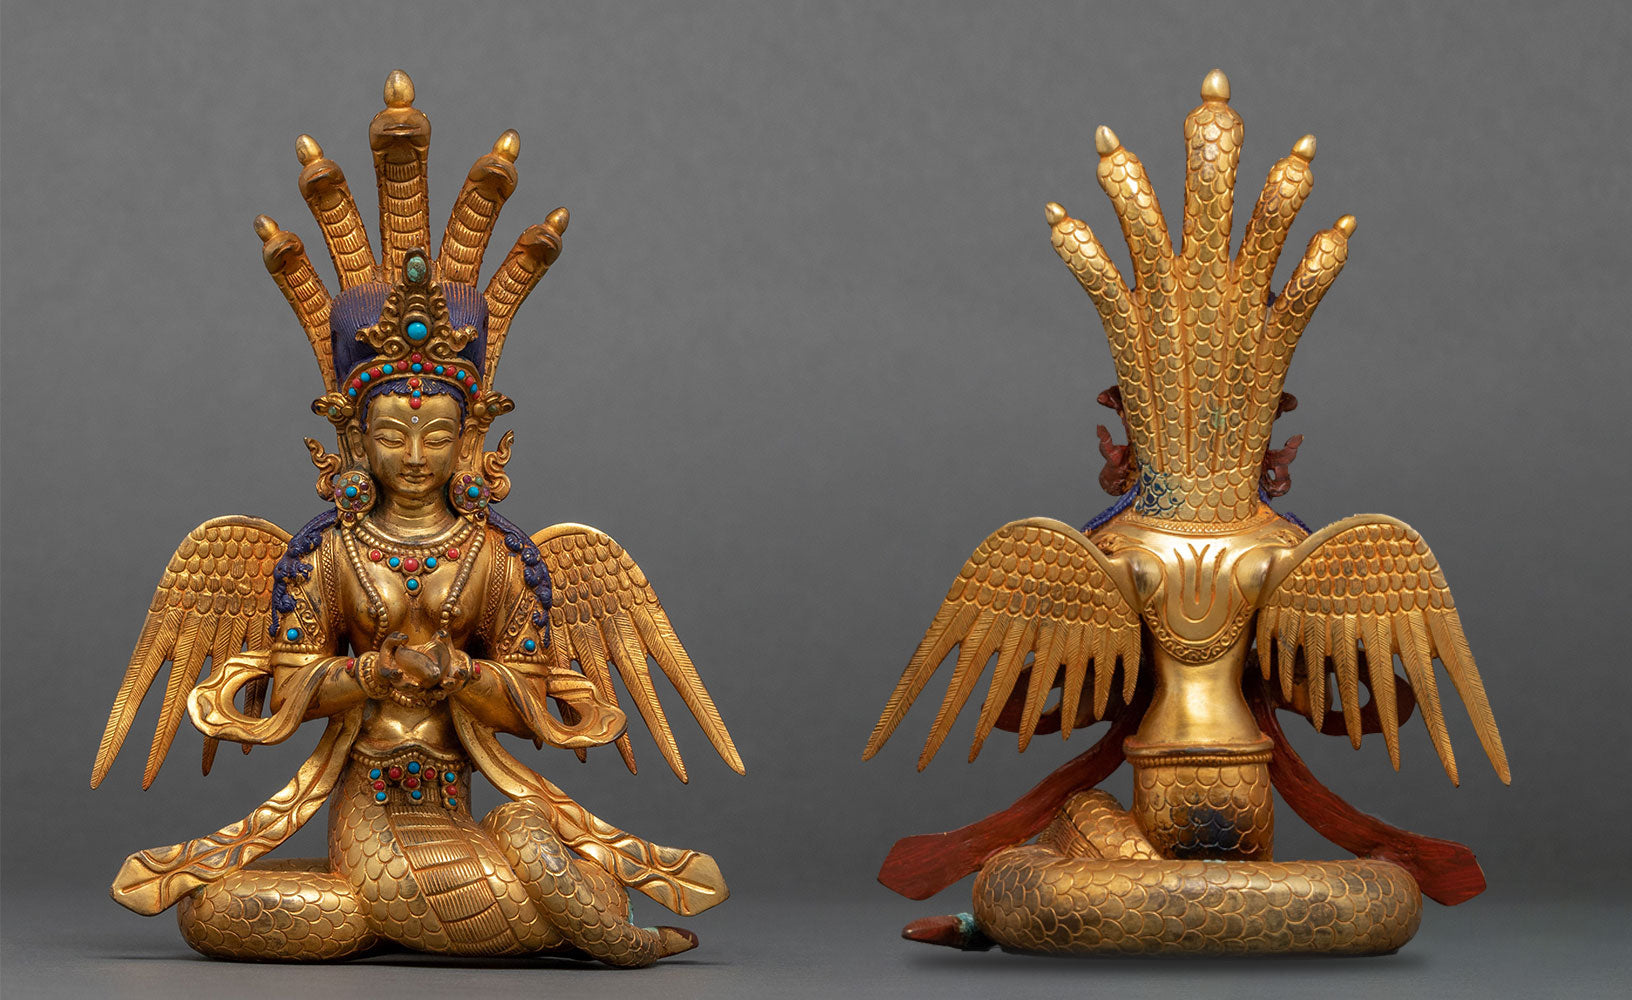 Naga Kanya Goddess